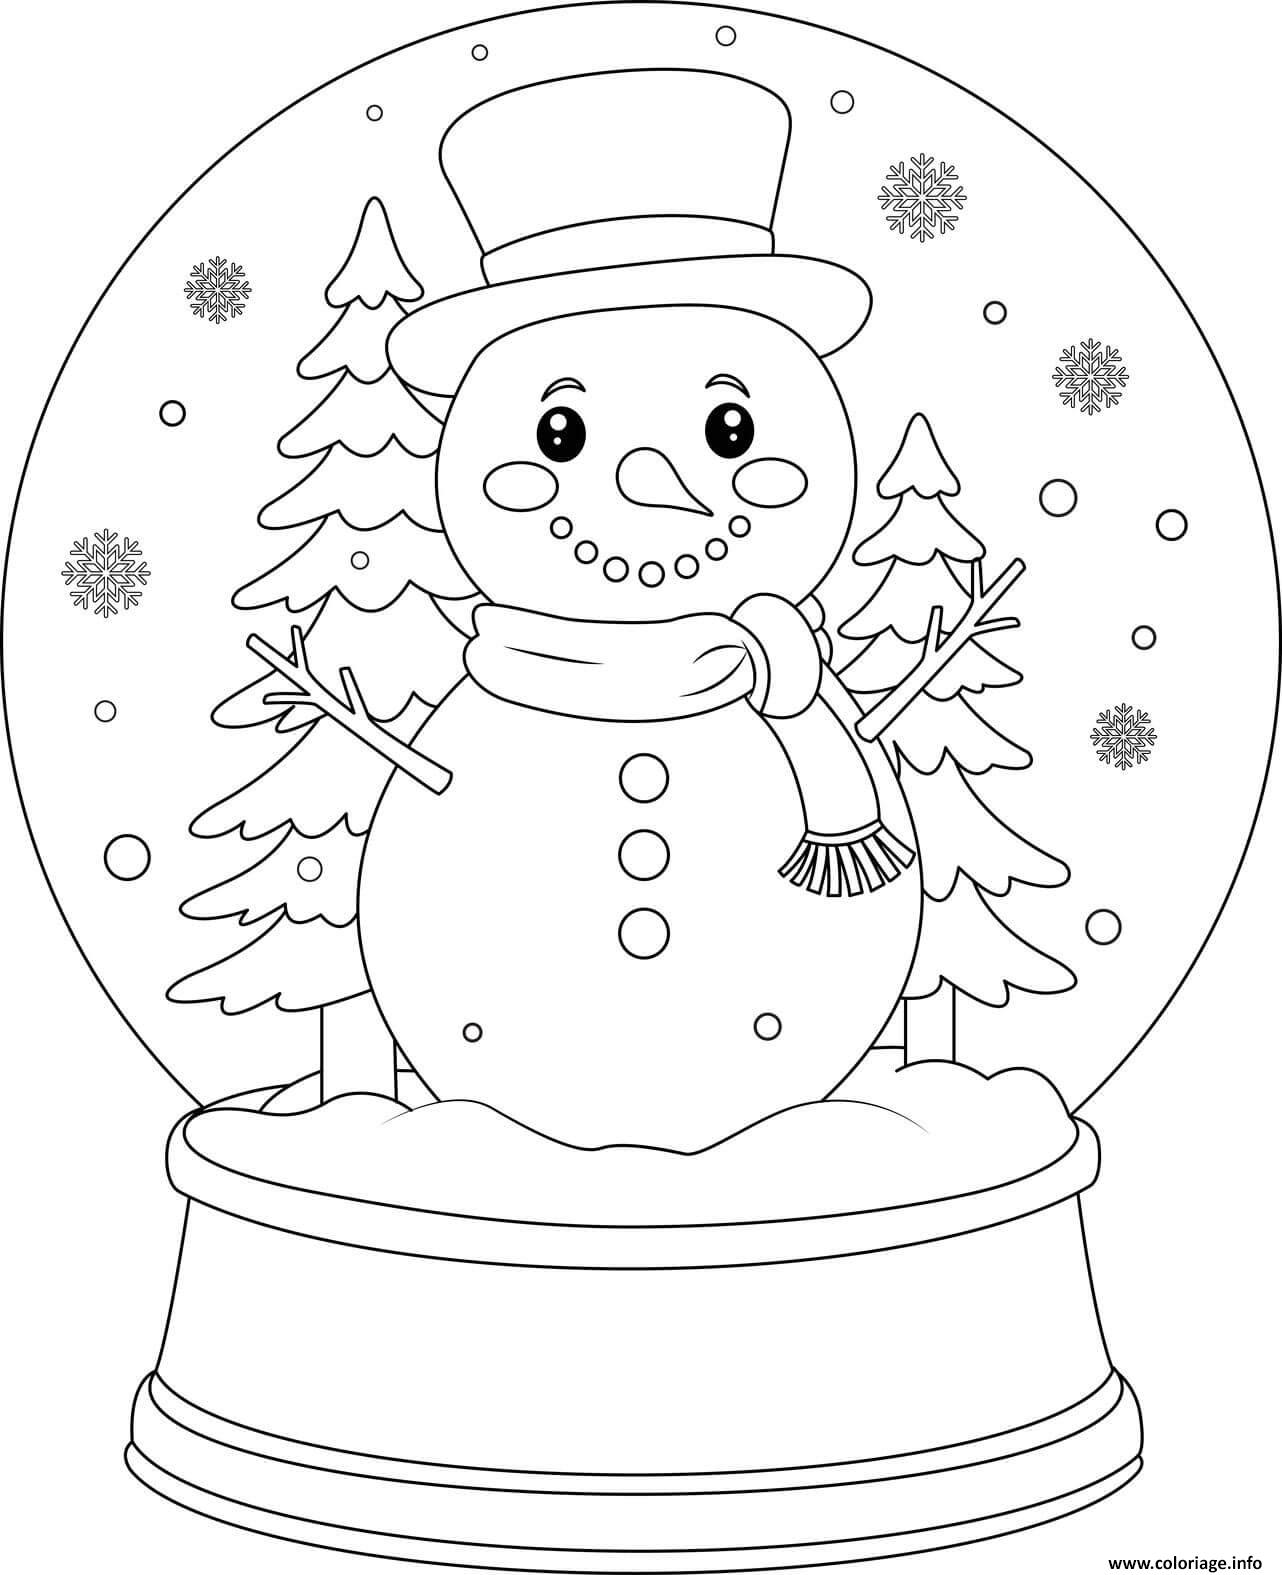 Dessin bonhomme neige boule neige avec sapins Coloriage Gratuit à Imprimer